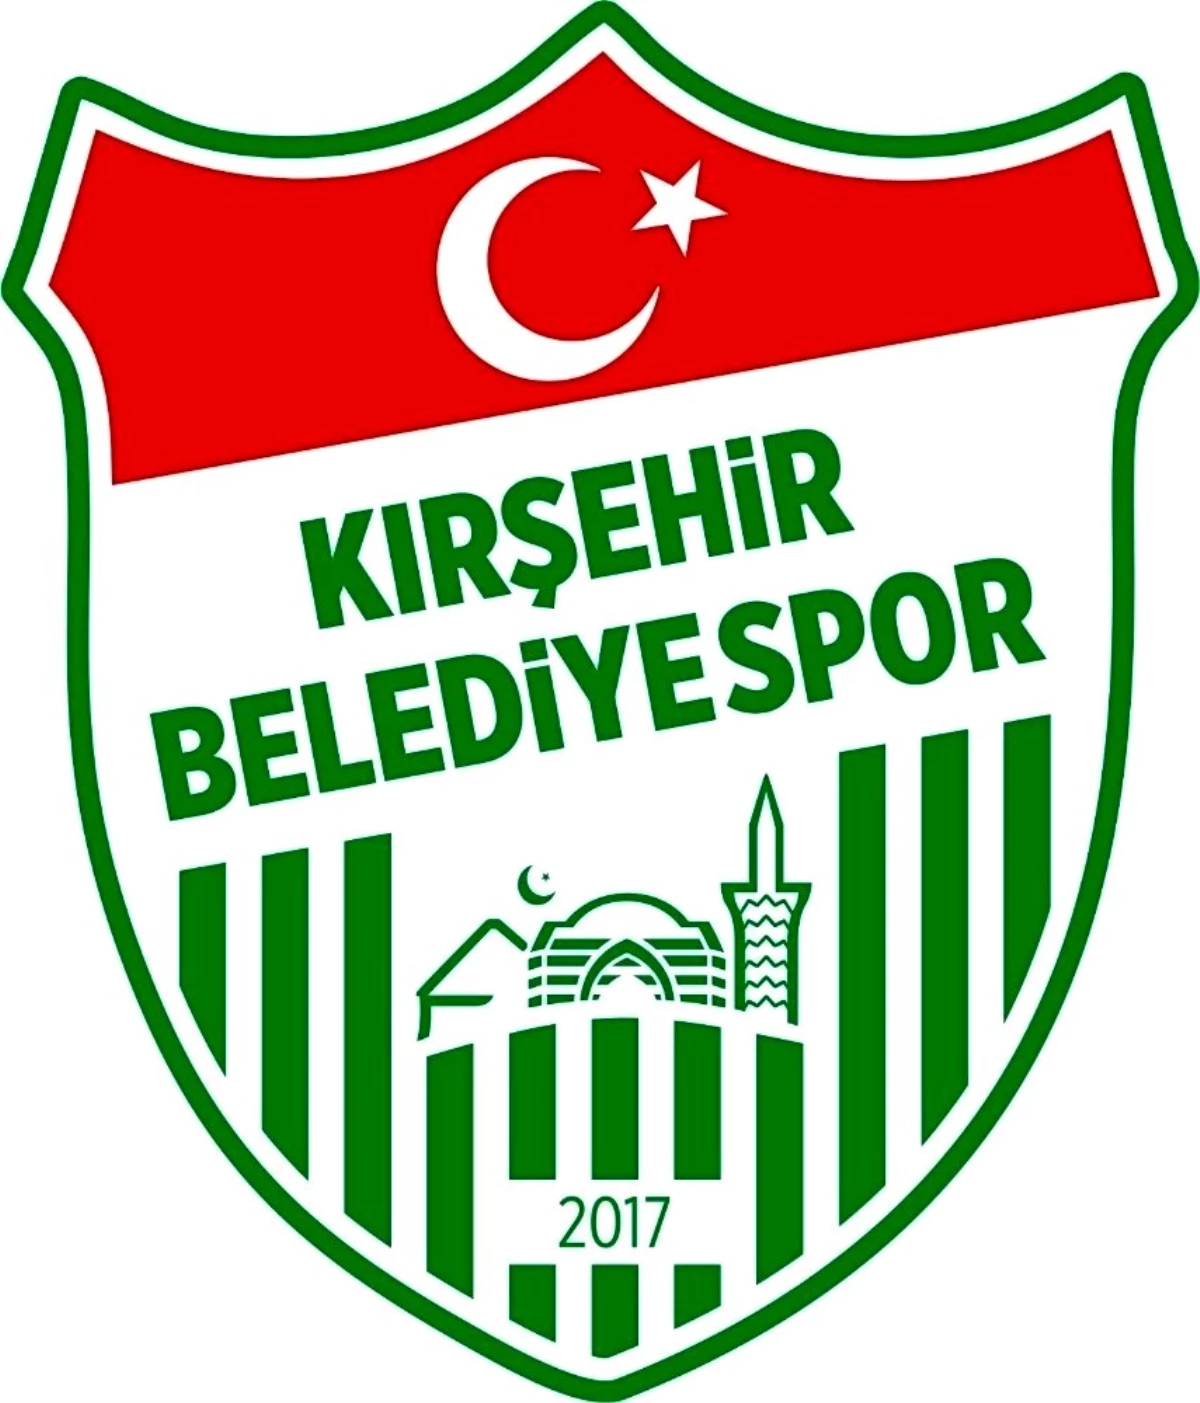 Kırşehir Belediyespor, 2. Lige yeni kadrosuyla hazır